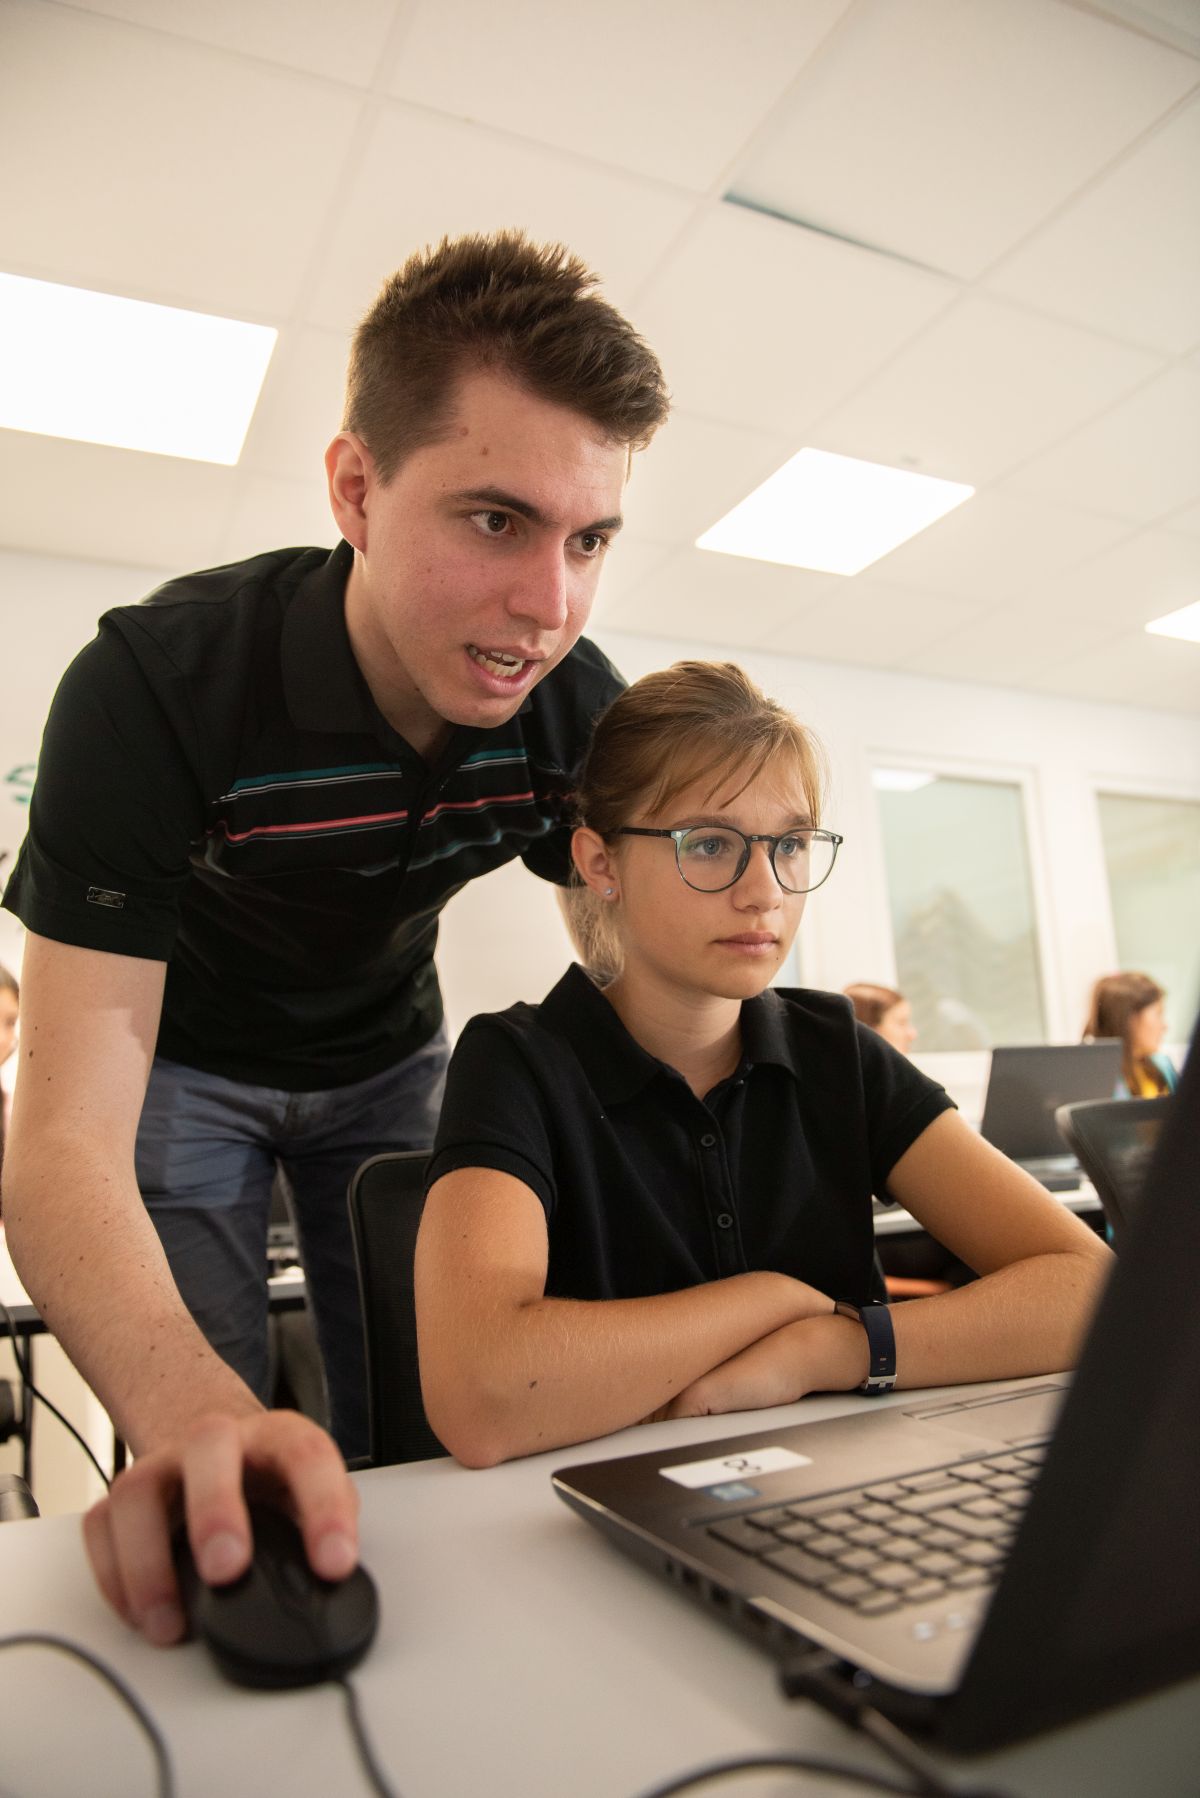 "Junioruni Austria's Mädchen Sommercamp Fasziniert mit Minecraft-Welt" 8